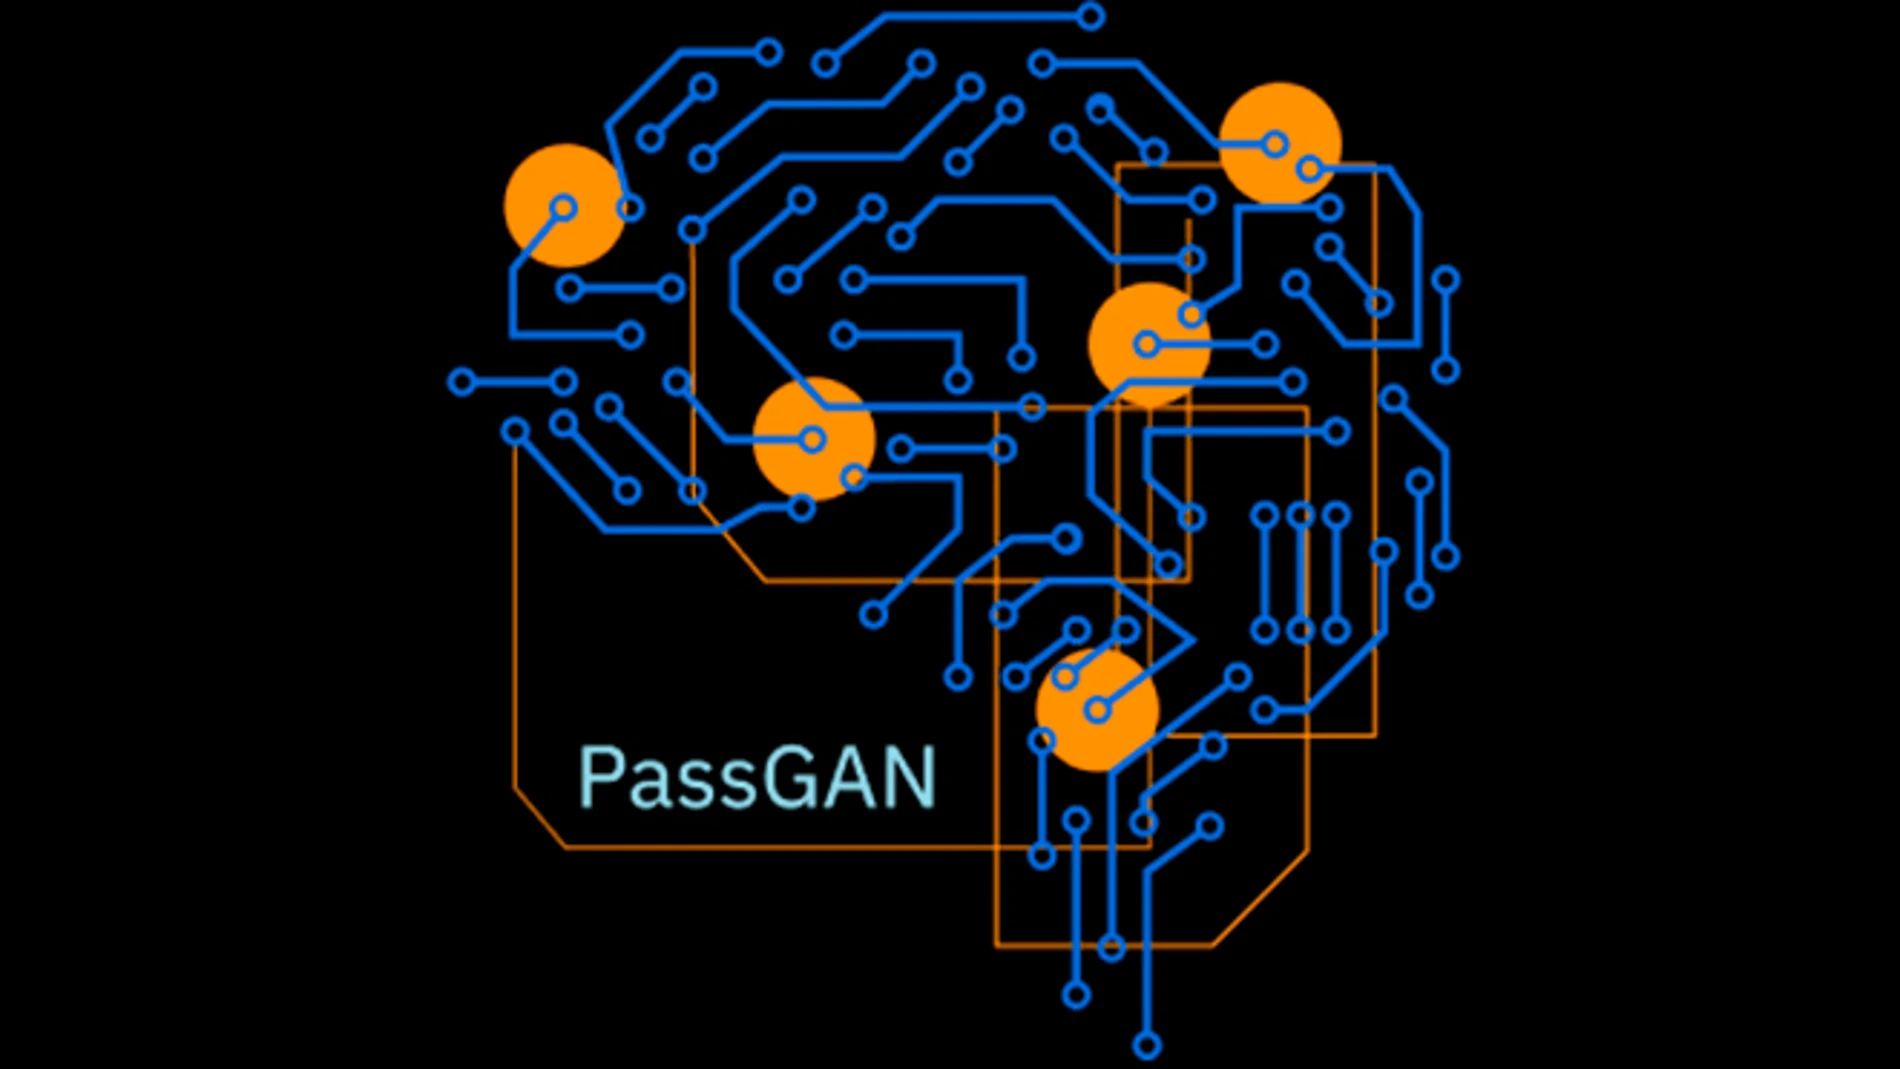 En esta web puedes ver cuánto le cuesta a la IA PassGAN averiguar tu contraseña.